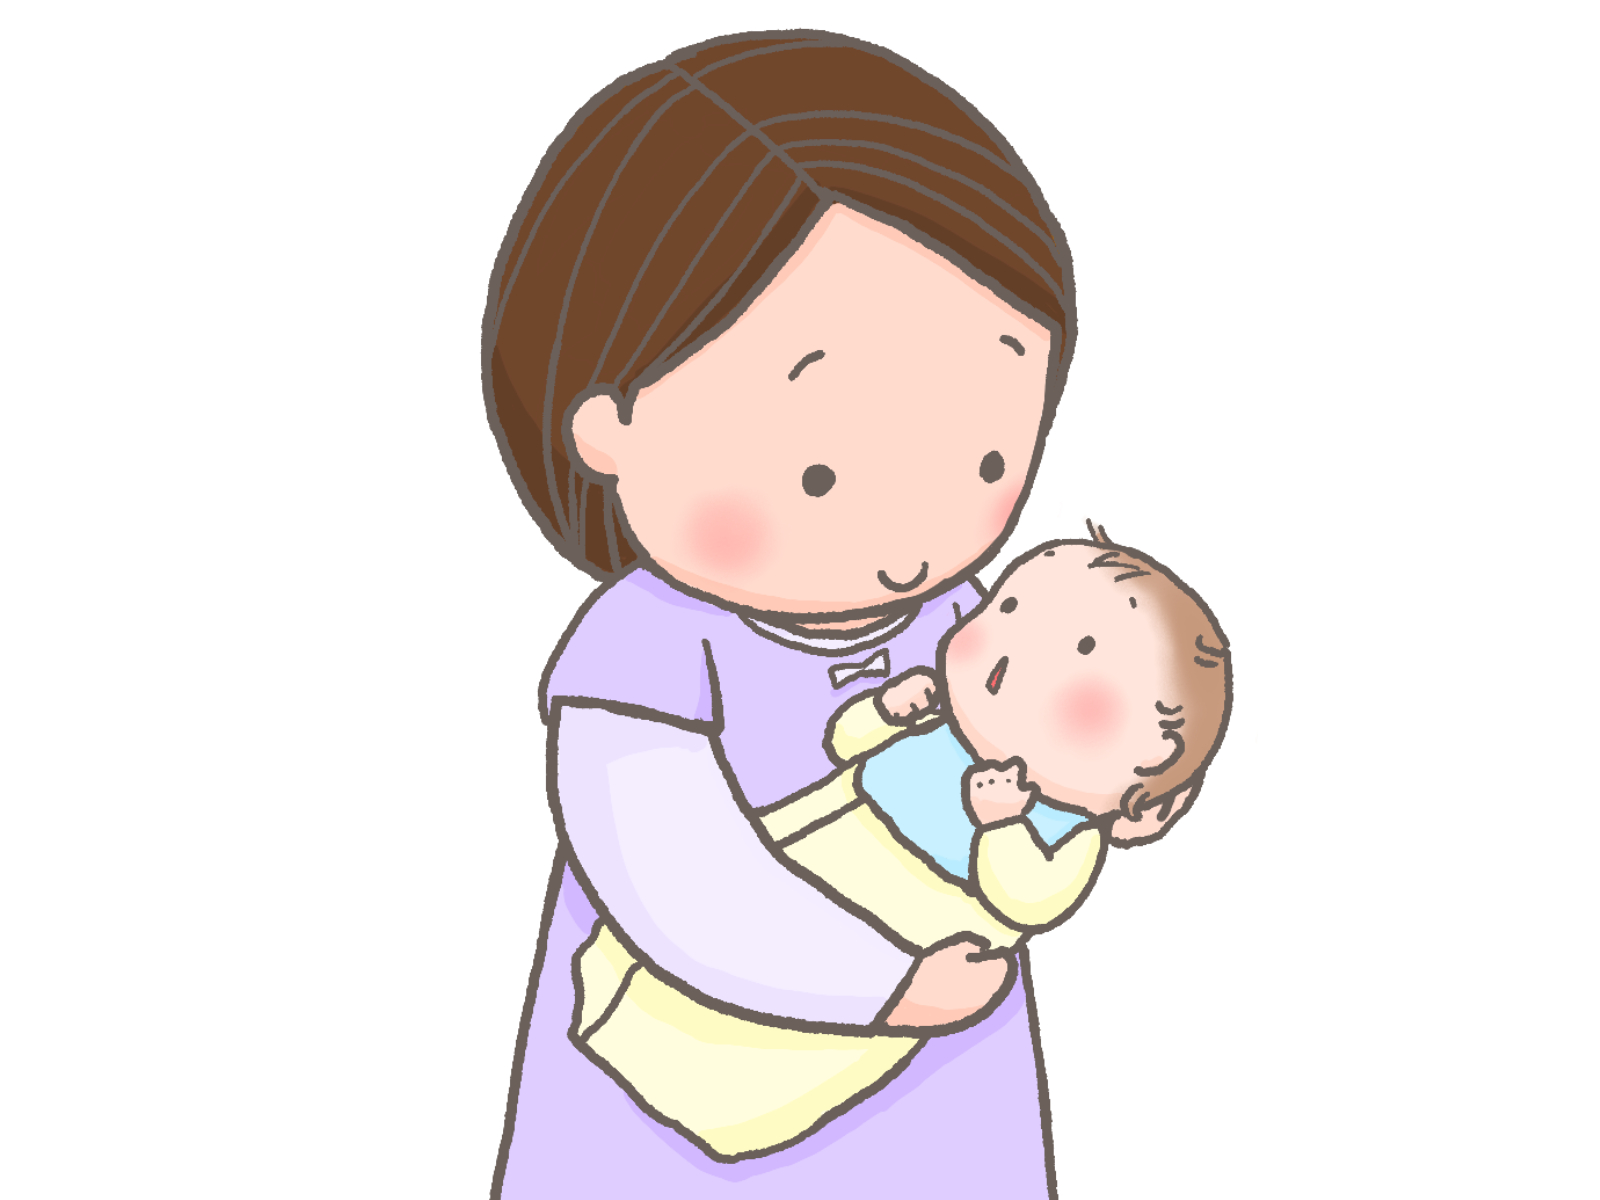 小さい赤ちゃんのお世話は、抱っこをする機会が多く、ママの体の負担は大きいですよね。